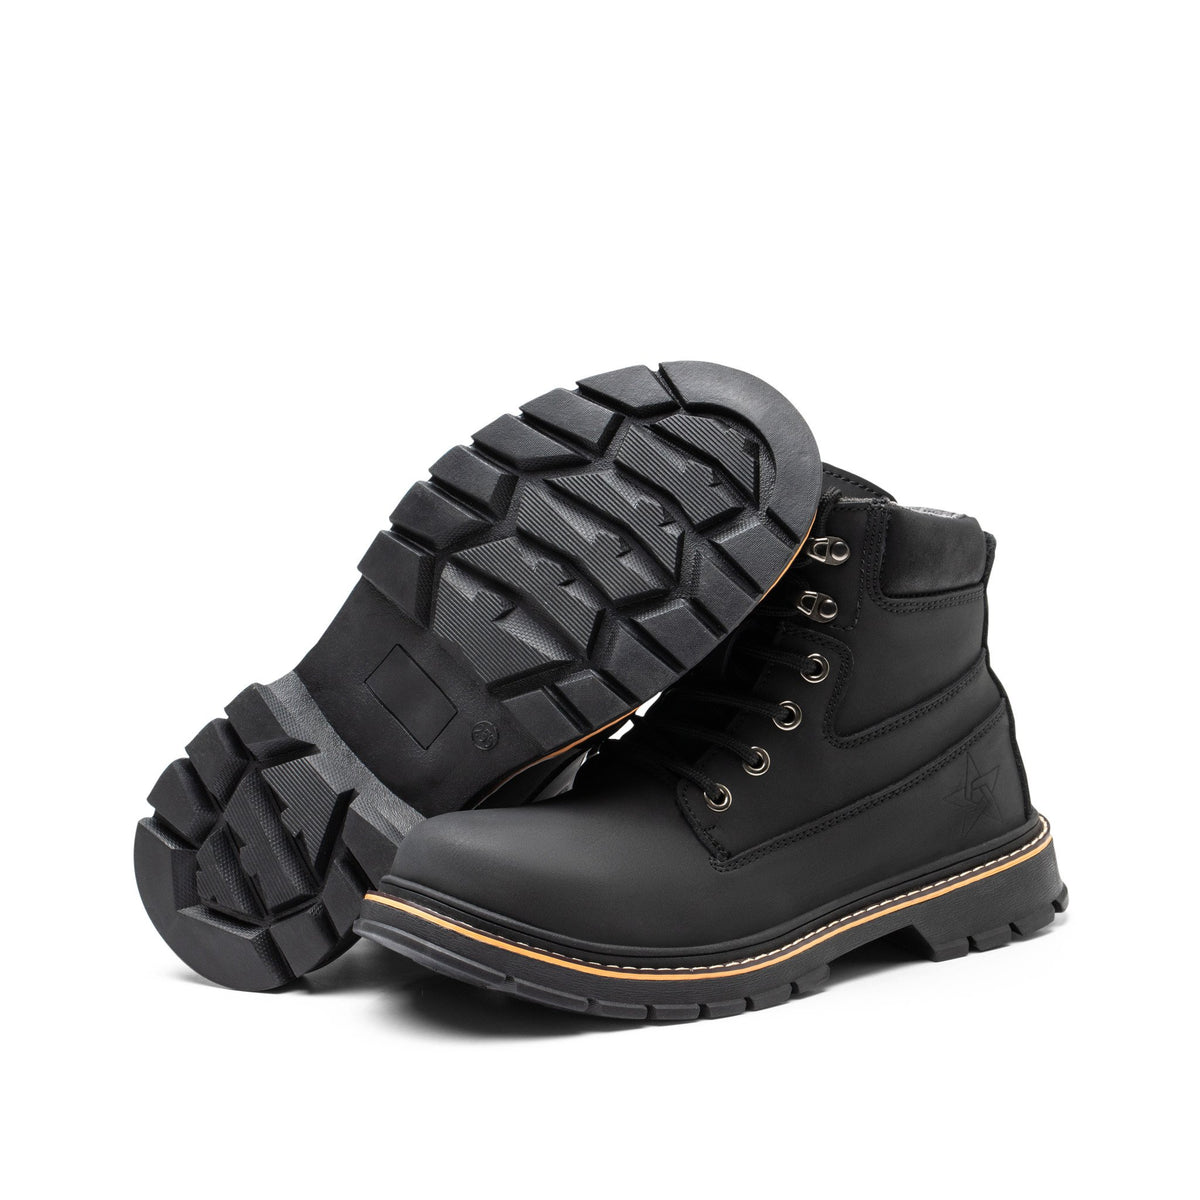 Hype Black 2.0 - Indestructible Shoes